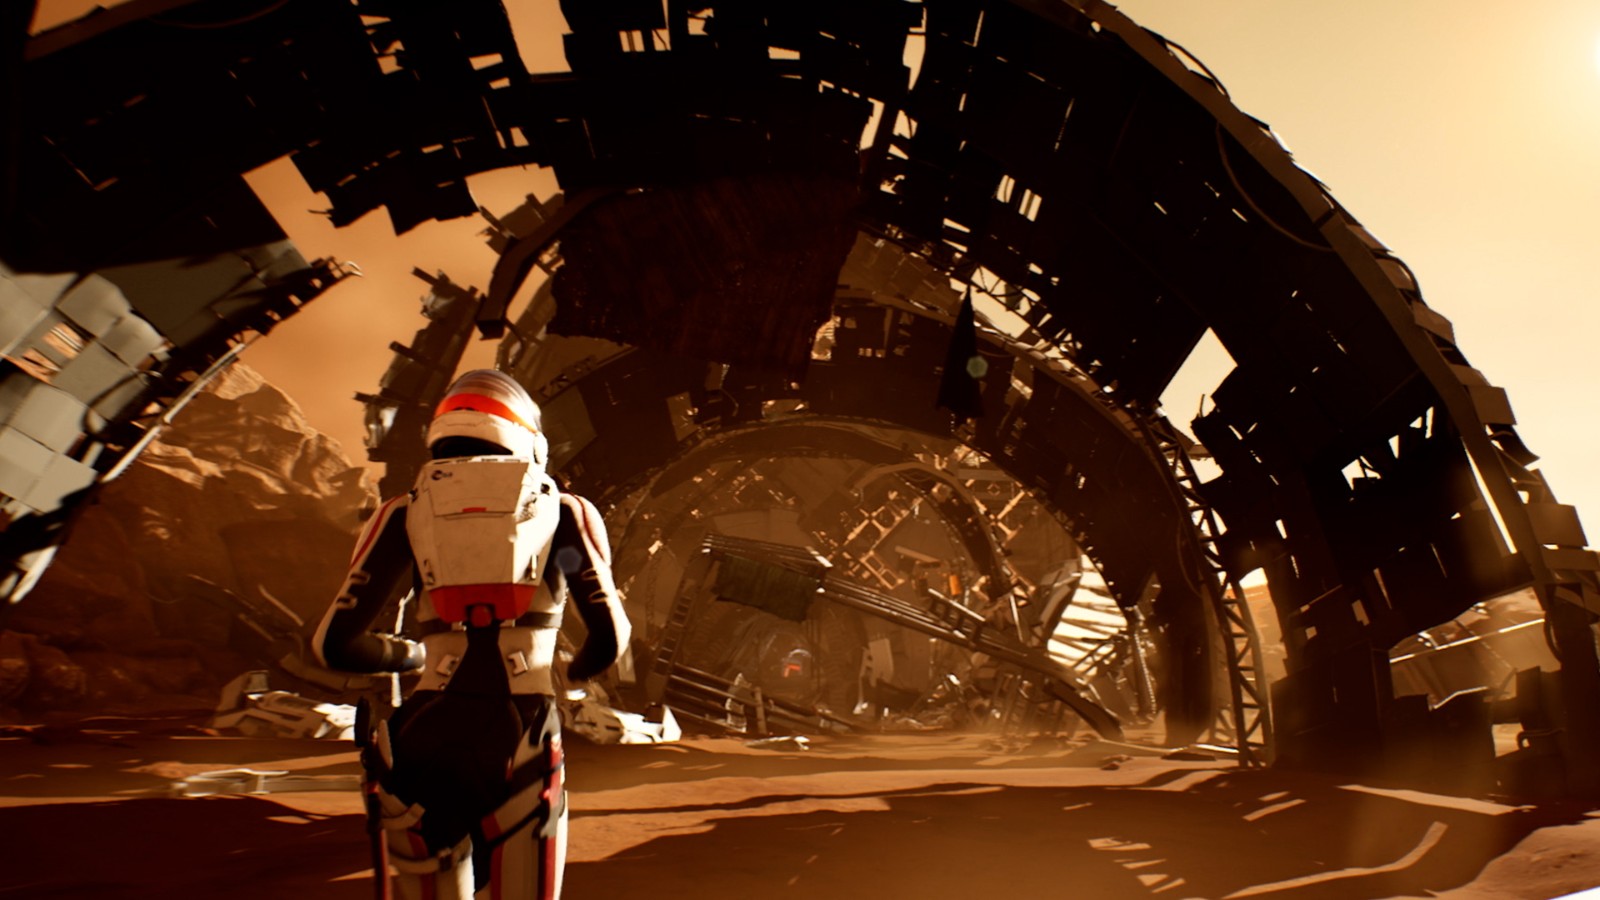 單人科幻遊戲《火星孤征》新視頻 美女冒險探索